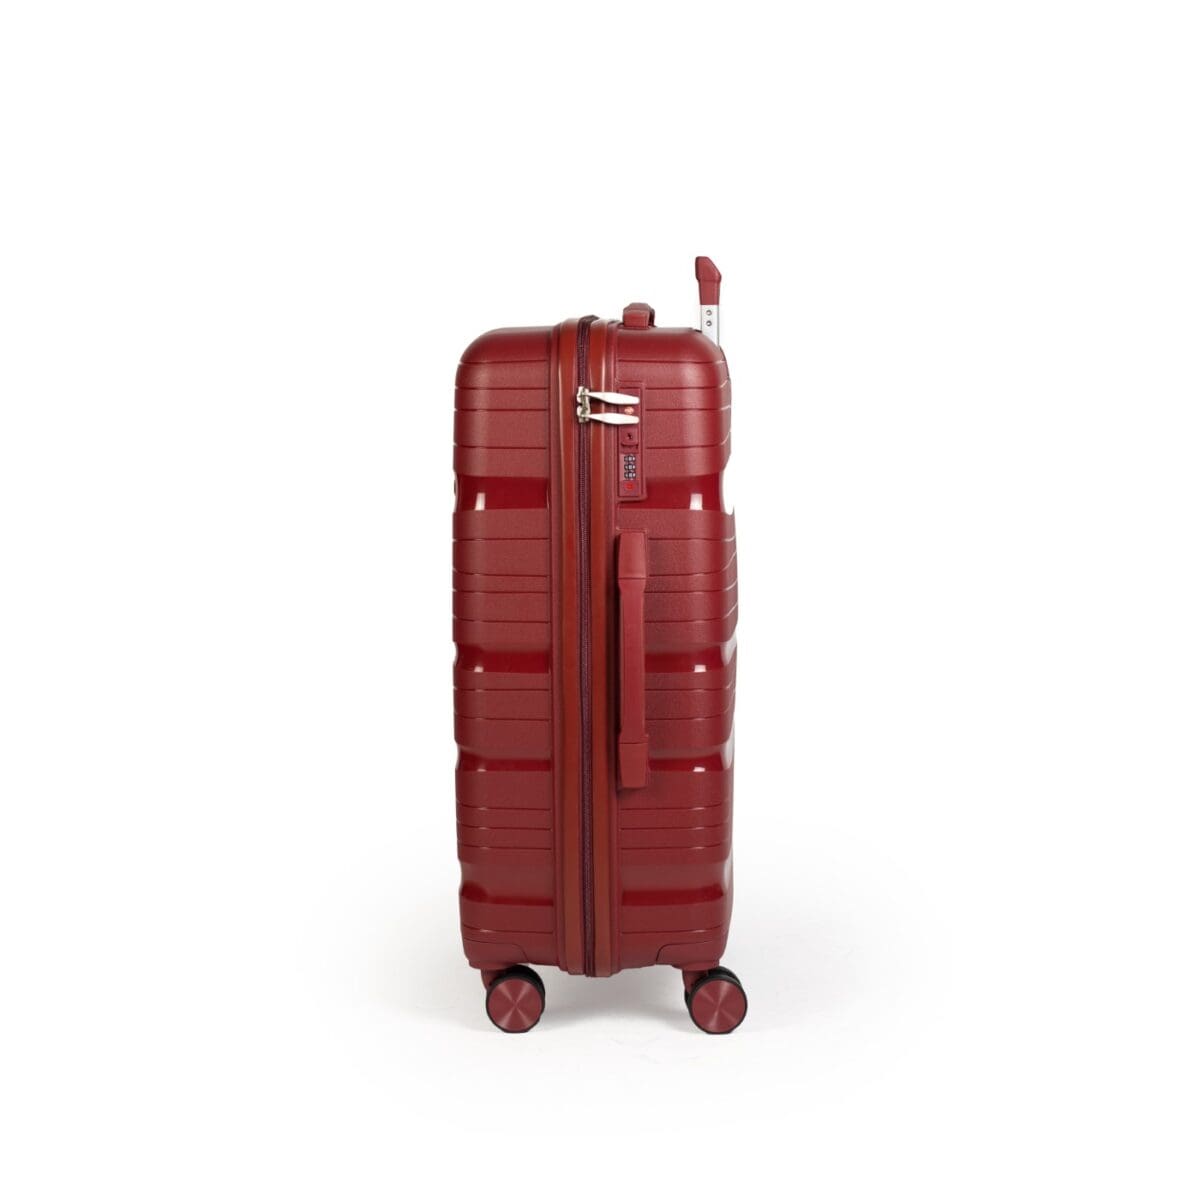 Αριστερή πλευρά βαλίτσας με χερούλι και συνδυασμό tsa σε μπορντό χρώμα